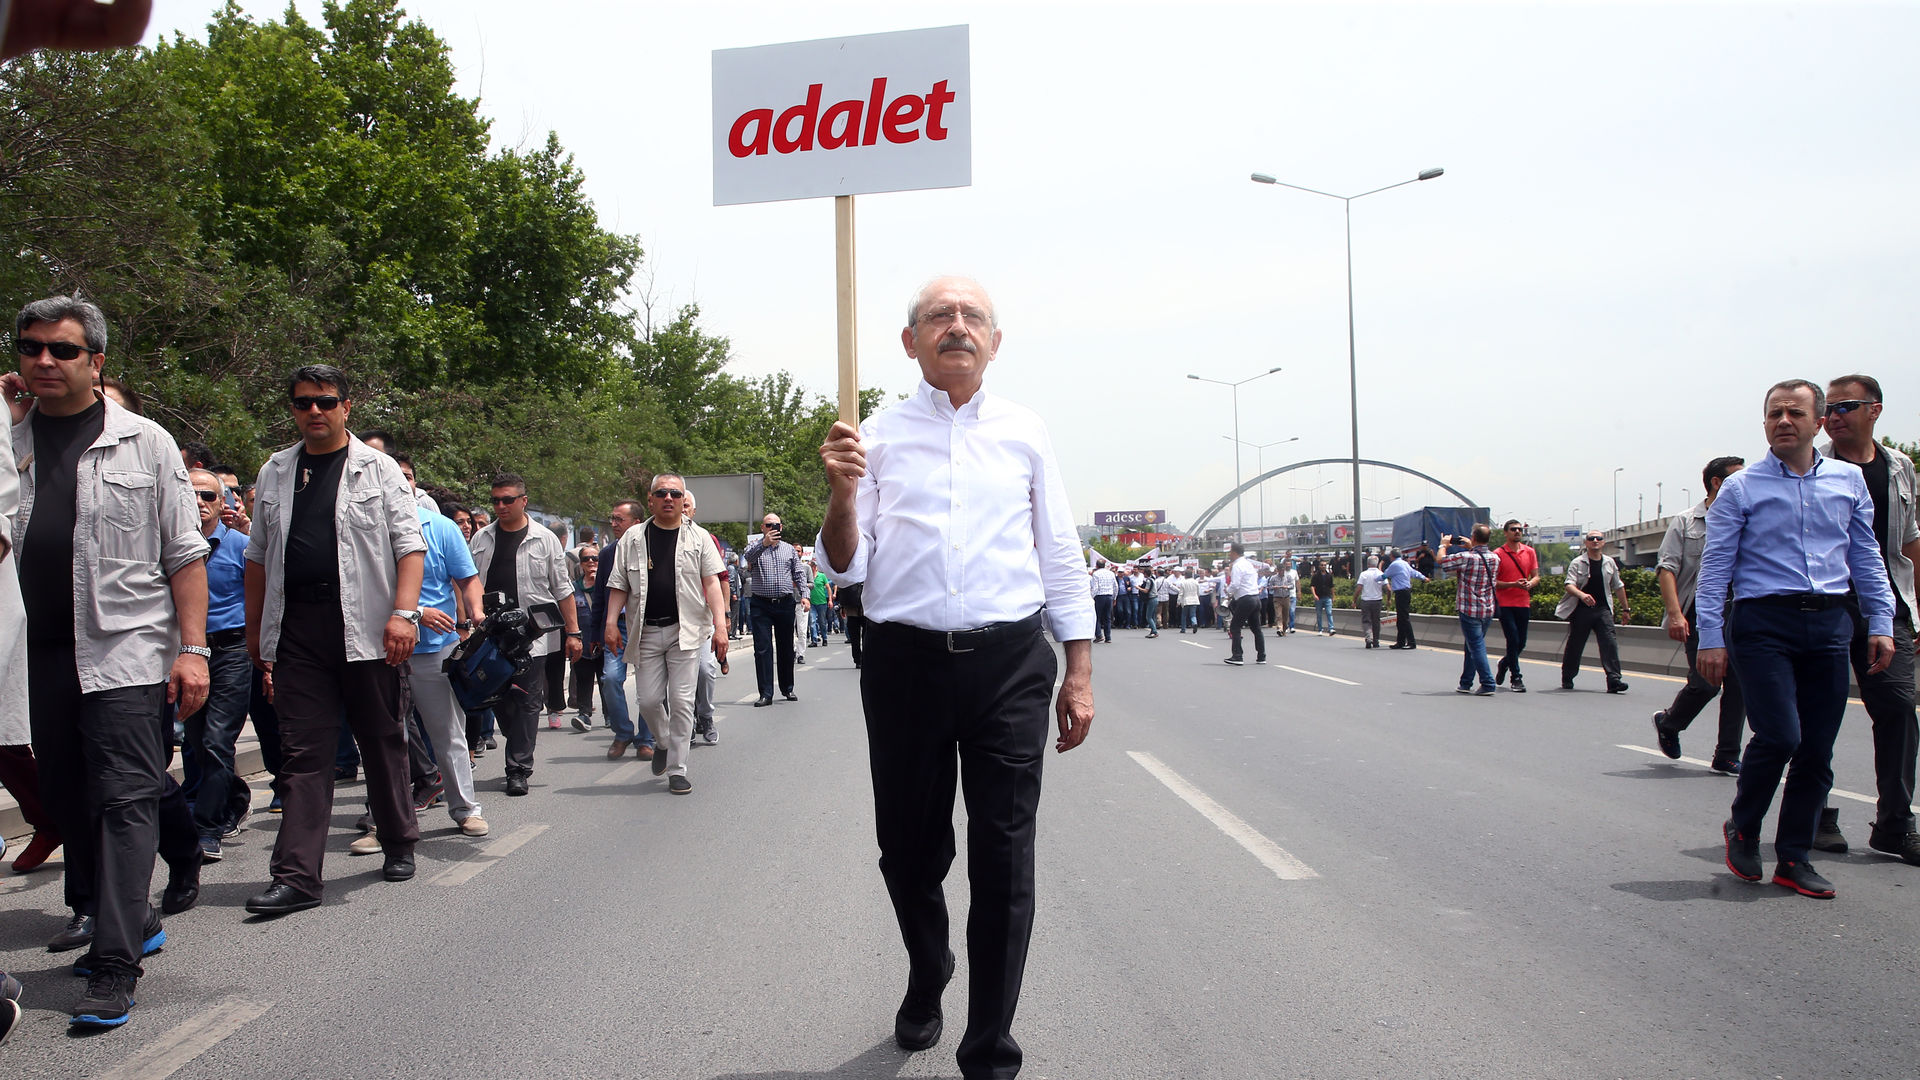 HDP Adalet Yürüyüşü'ne katılıyor